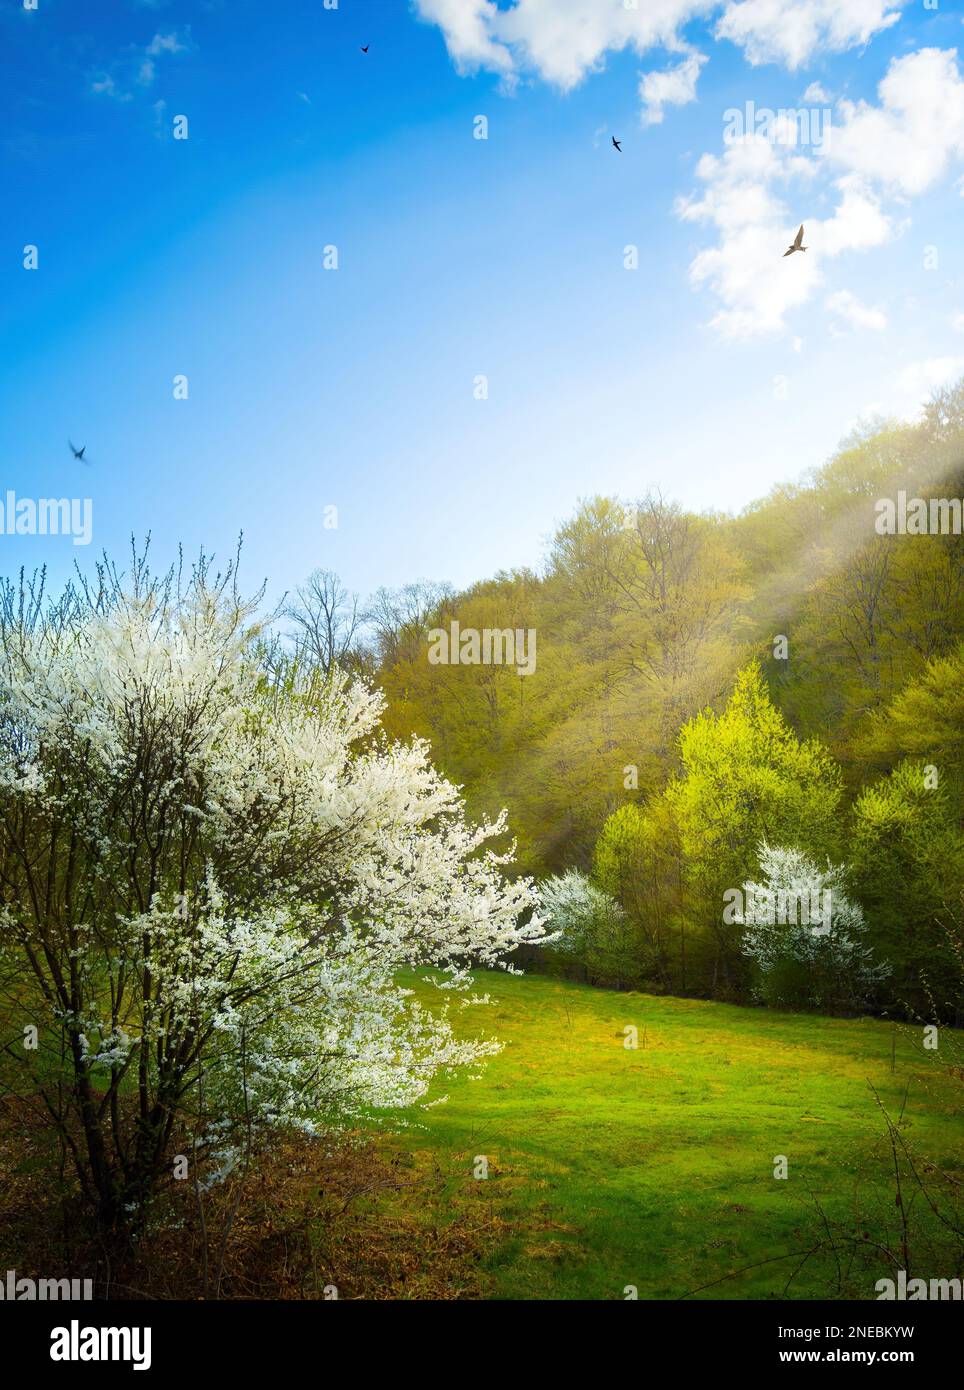 Bellissimo paesaggio primaverile. Bella natura con alberi da frutto in fiore e foresta primaverile contro cielo azzurro soleggiato con nuvole Foto Stock